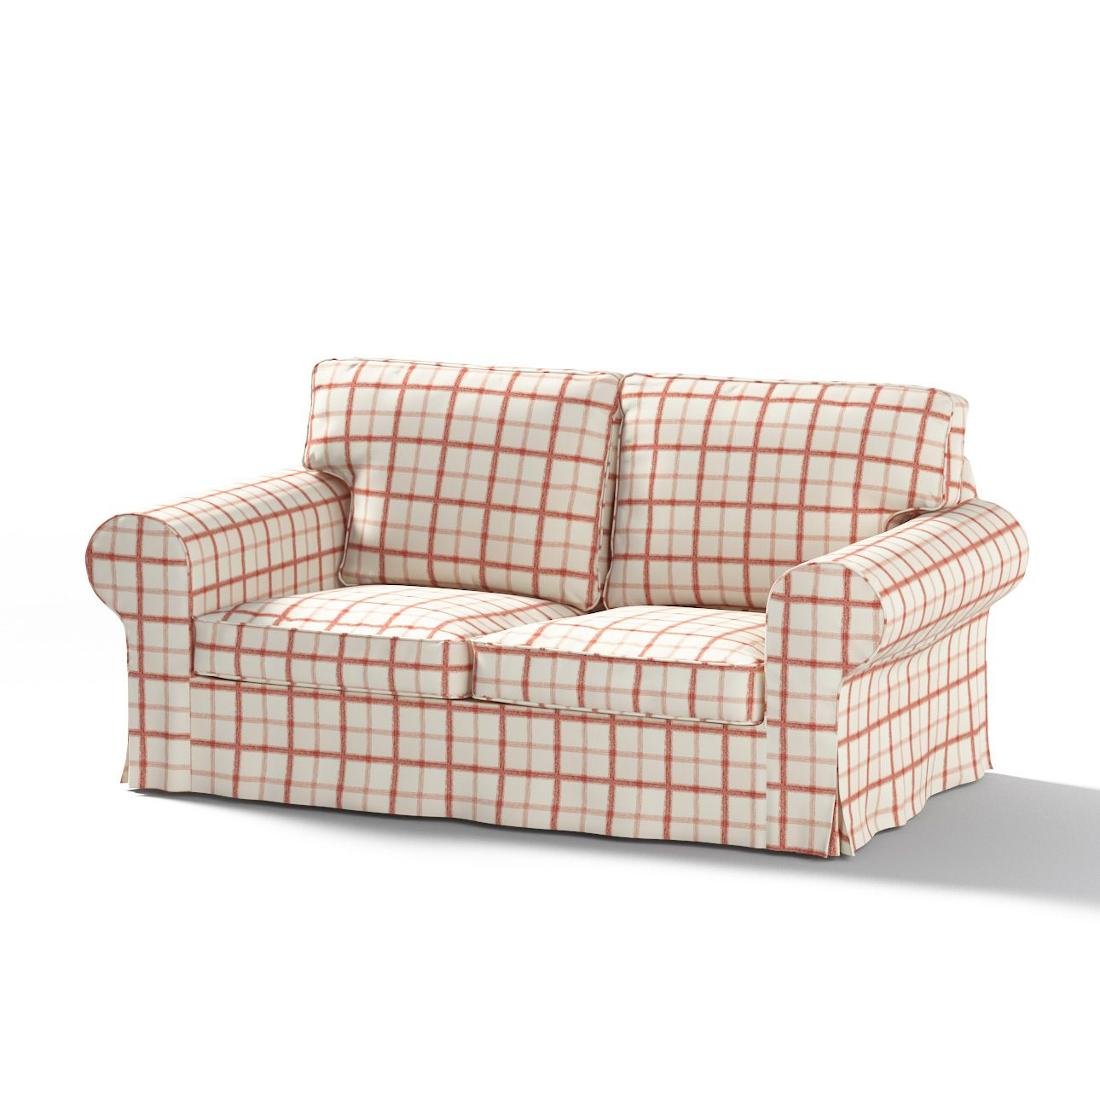 Dekoria Pokrowiec na sofę Ektorp 2-osobową rozkładaną model po 2012 ecru tło czerwona kratka 200 x 90 x 73 cm Avinon 1016-131-15